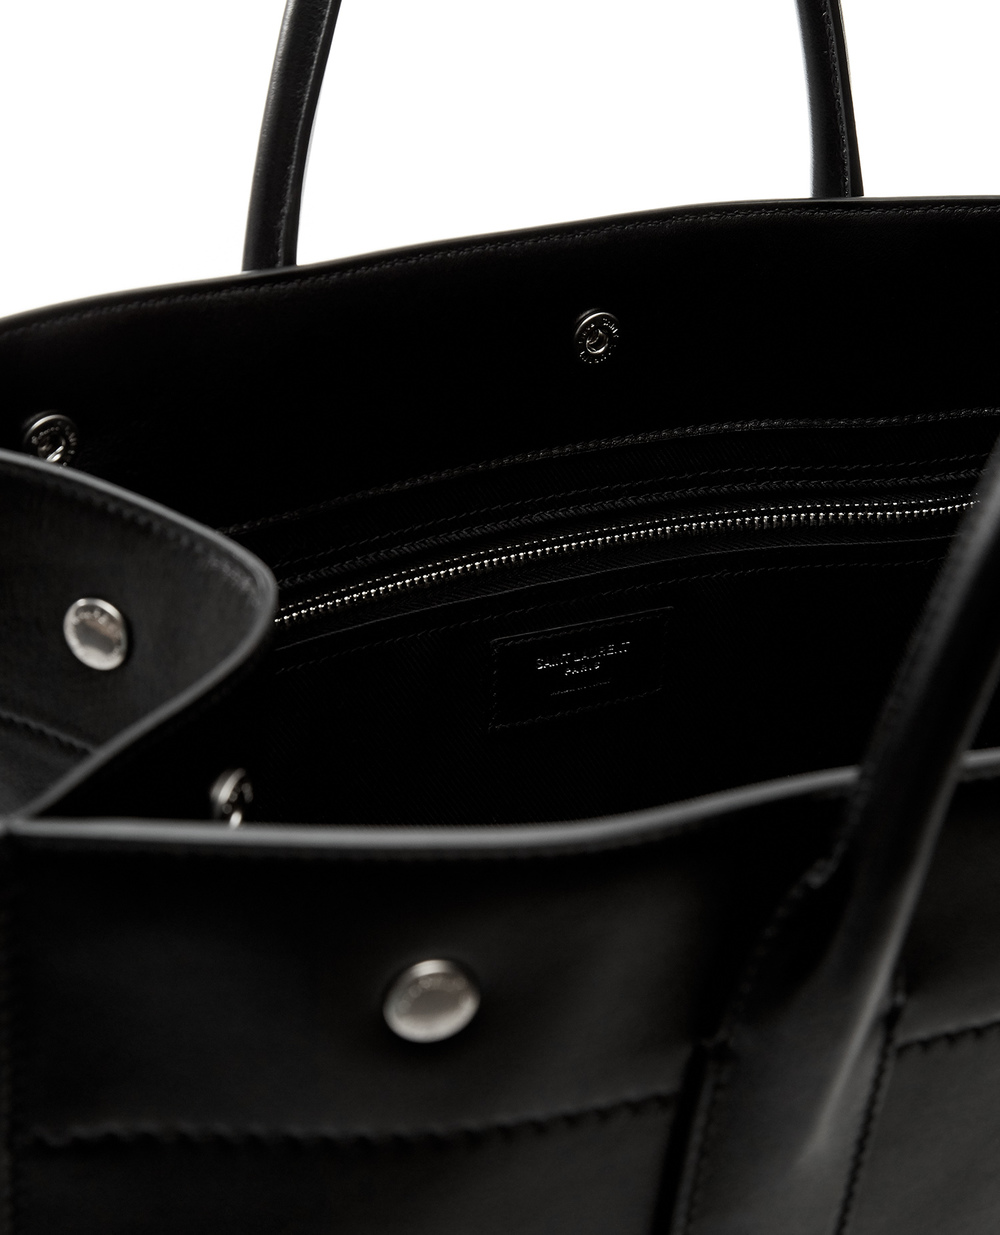 Кожаная сумка Rive Gauche Saint Laurent 663970-CWTFE, черный цвет • Купить в интернет-магазине Kameron